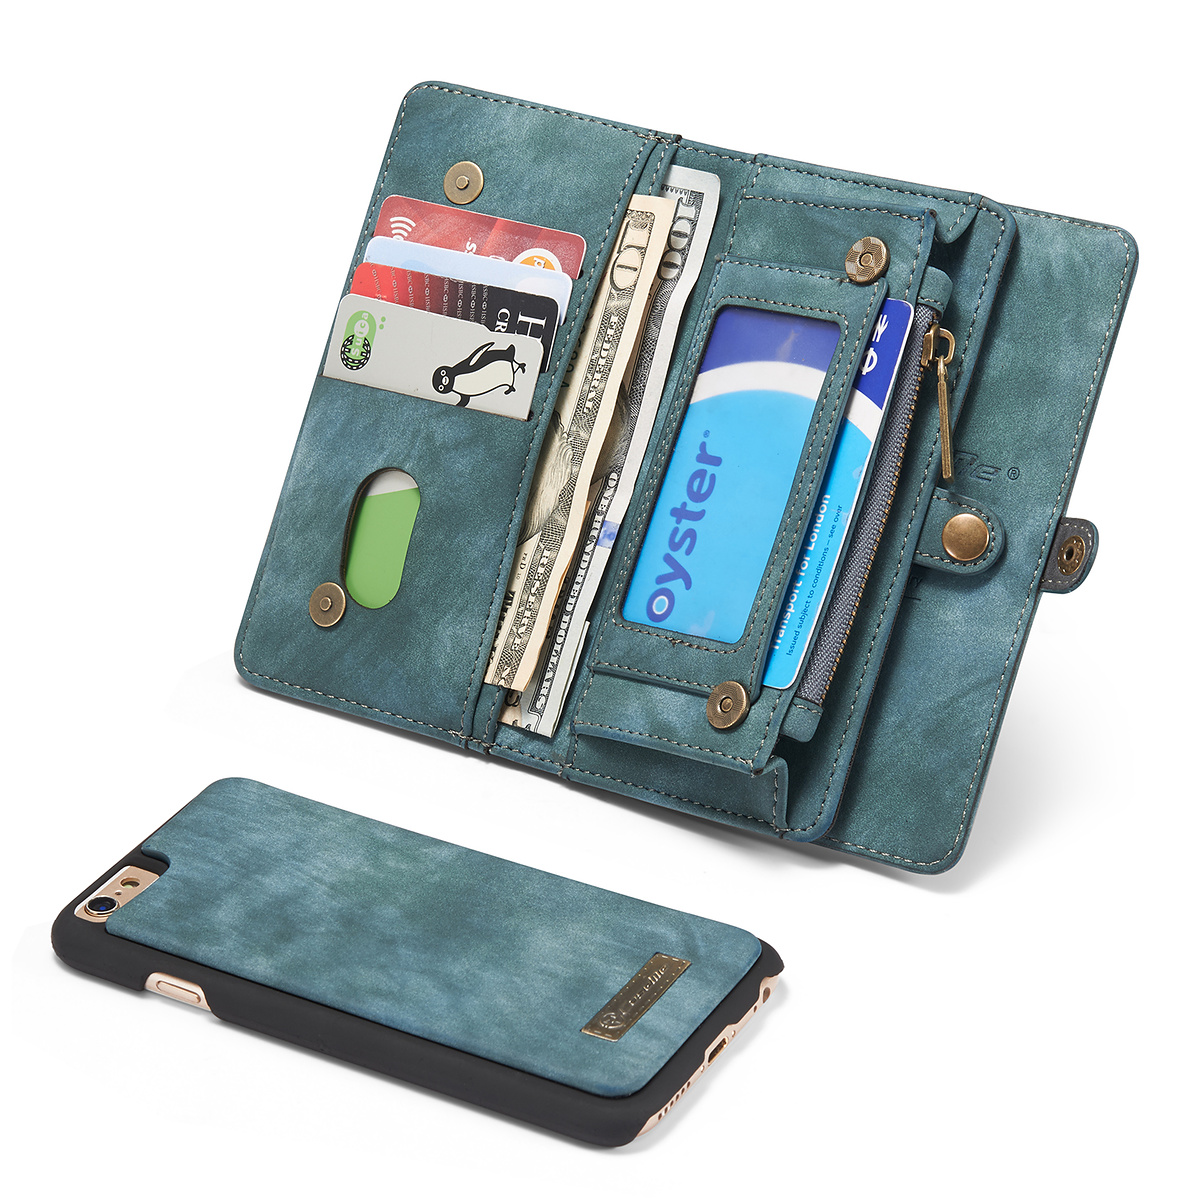 CaseMe plånboksfodral med magnetskal till iPhone 6/6S, blå